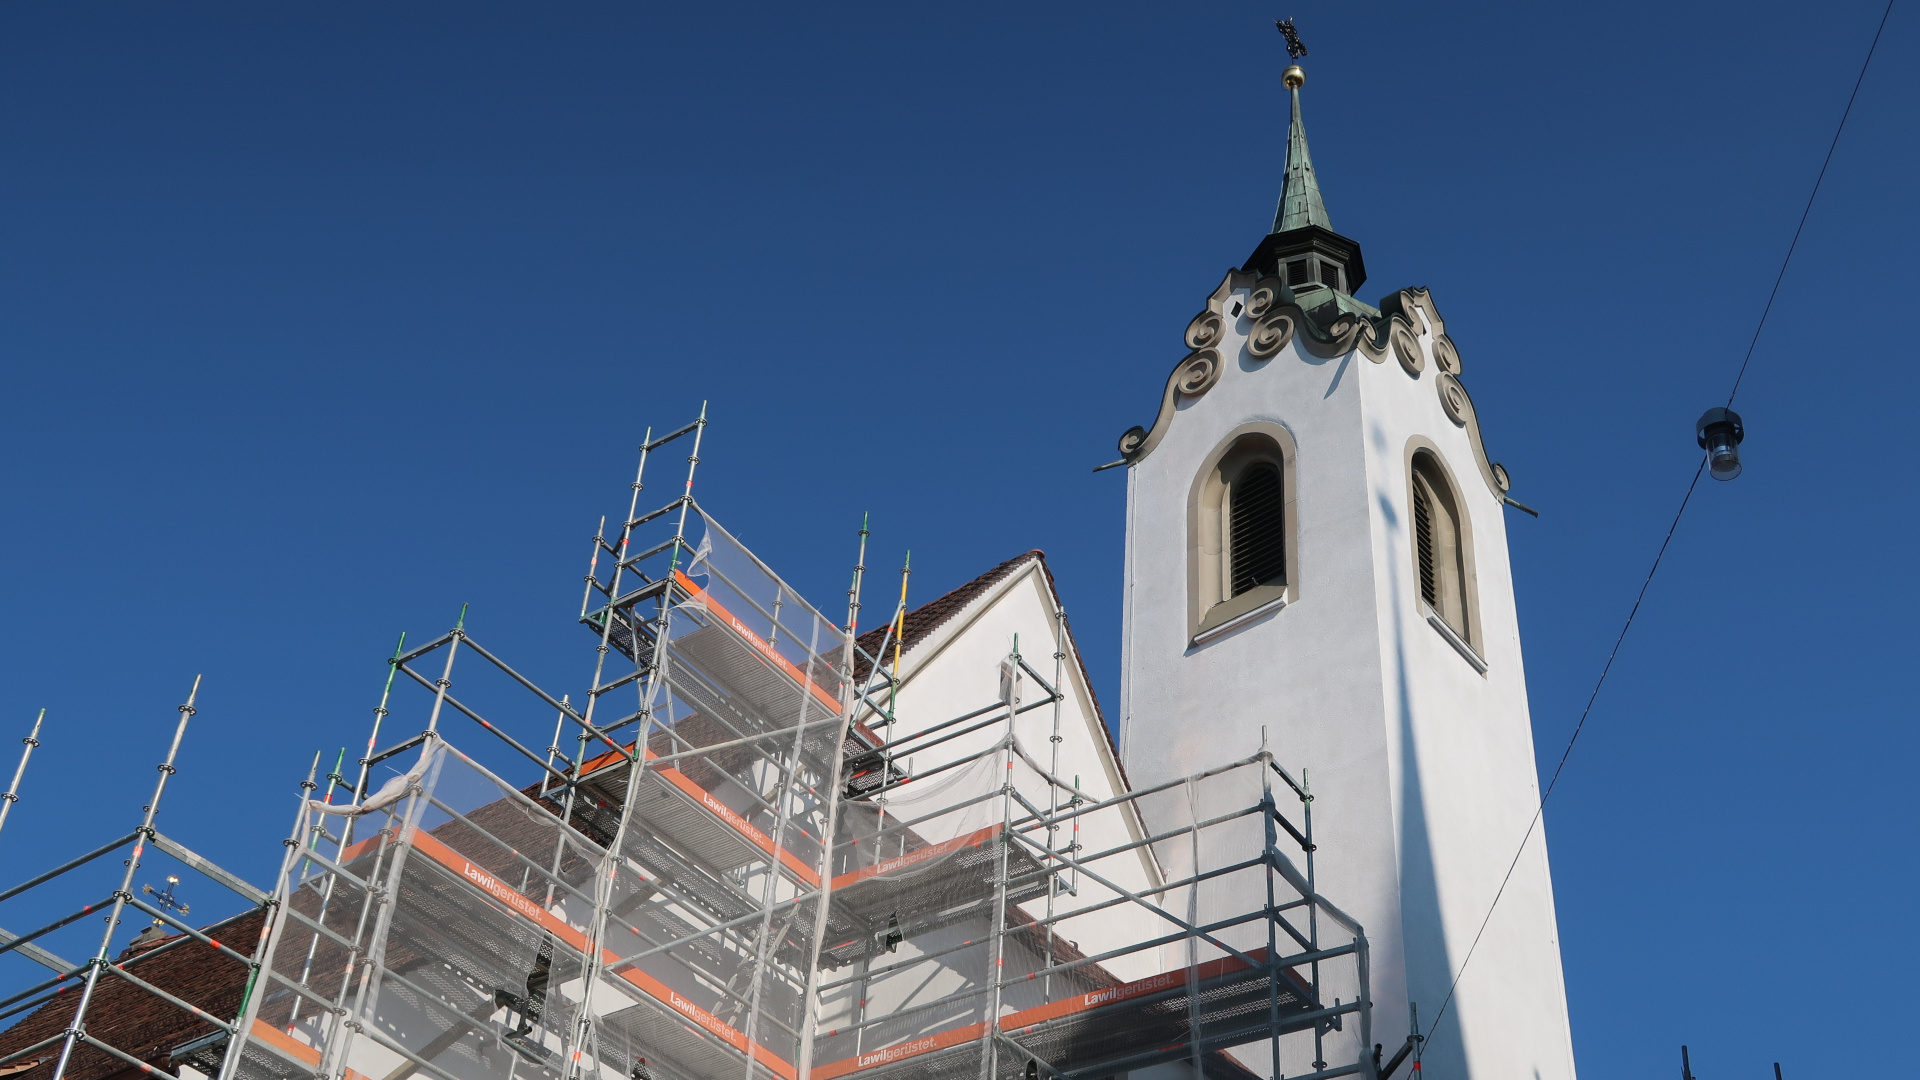 Vom Turm der Peterskapelle werden zwischen dem 16. und 30. Juli Handyklingeltöne zu hören sein